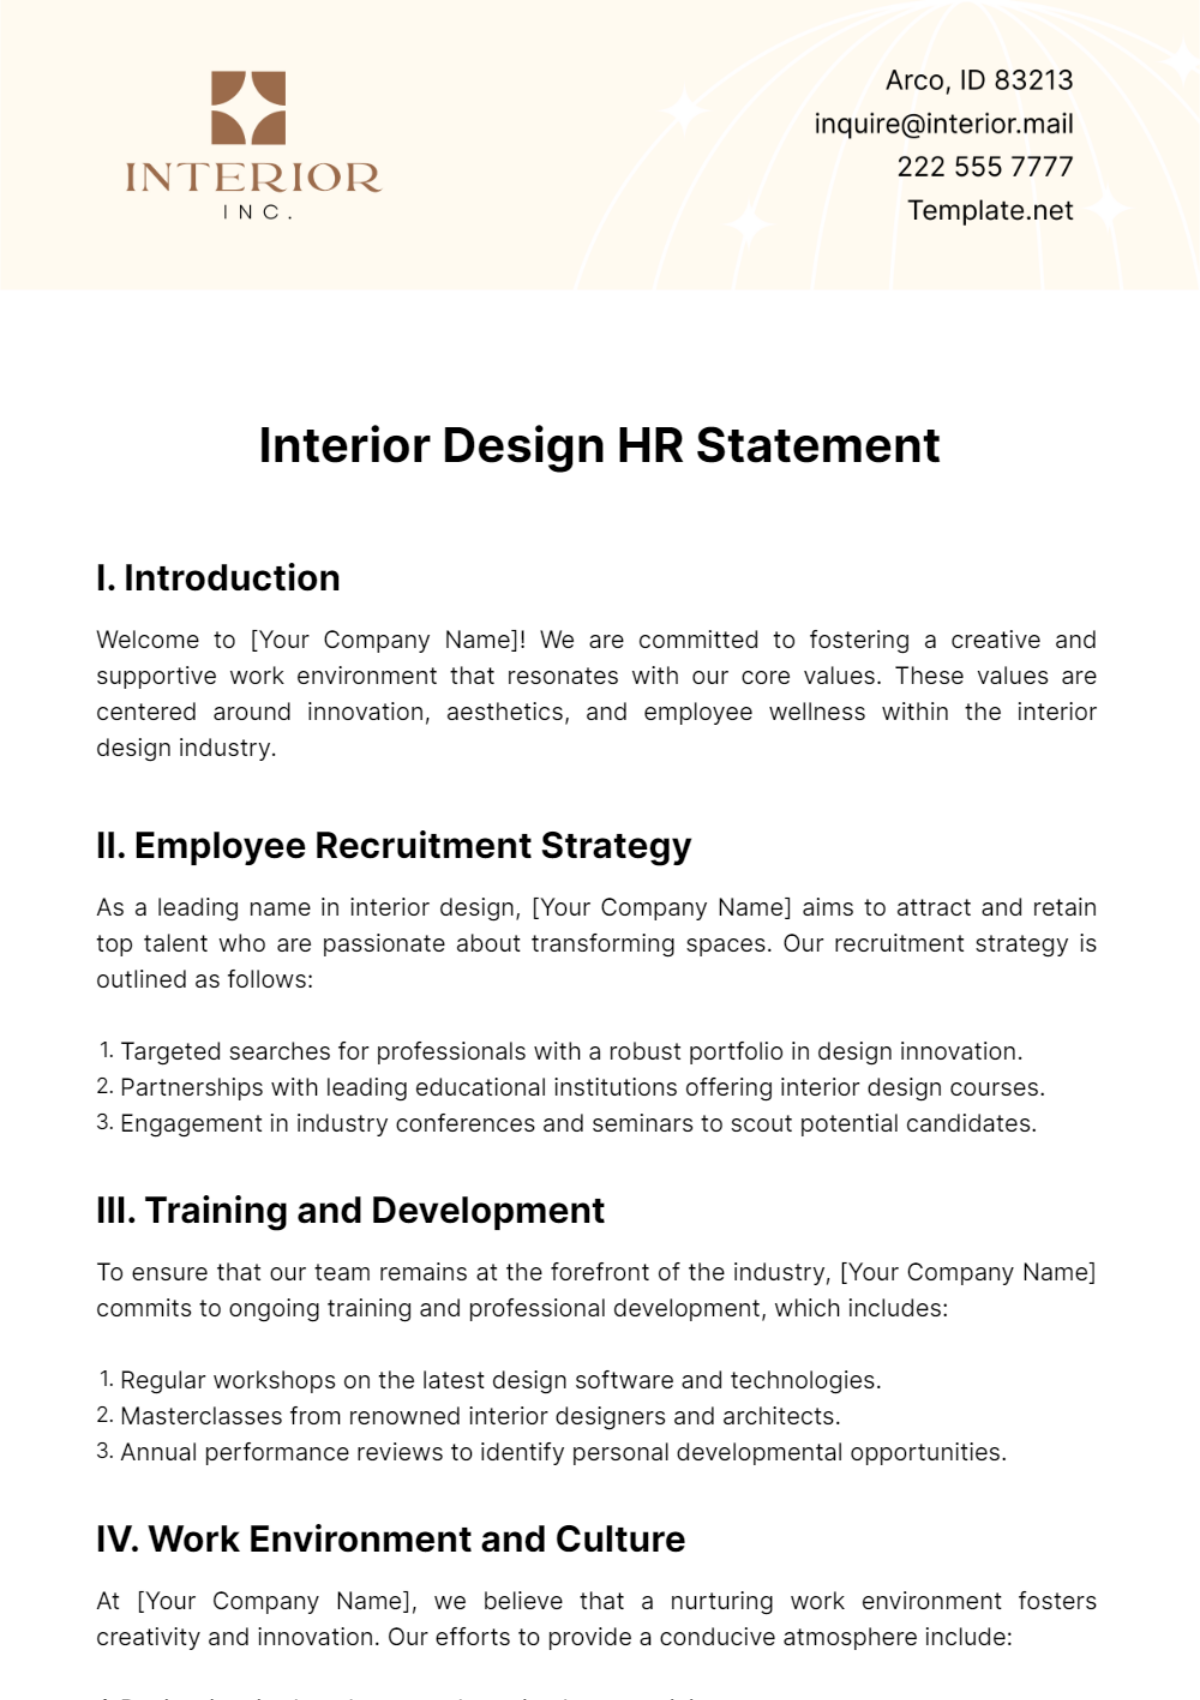 Free Interior Design HR Statement Template